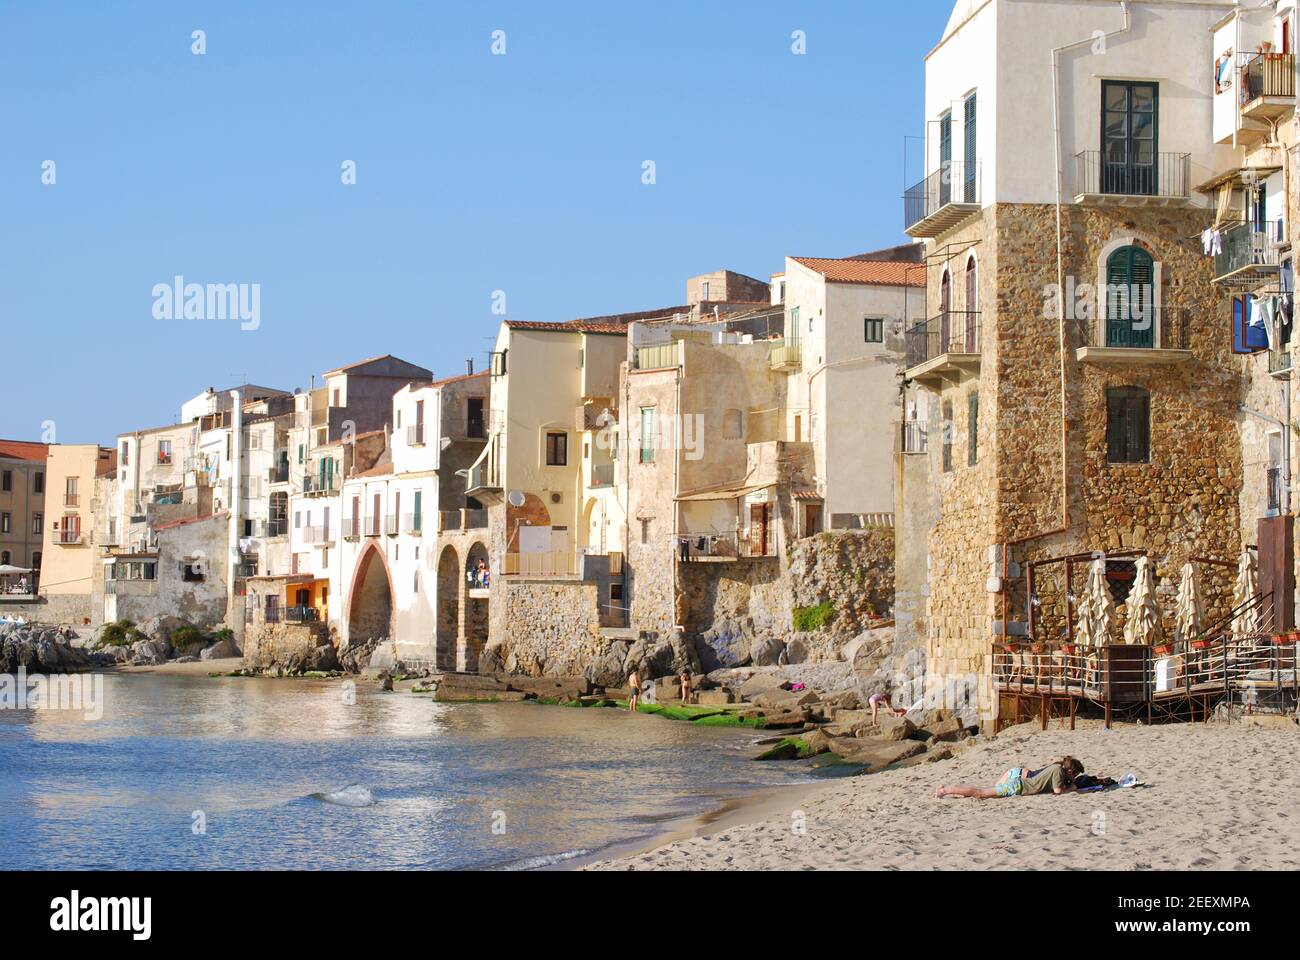 Plage et bord de mer, Cefalu, Province de Palerme, Sicile, Italie Banque D'Images